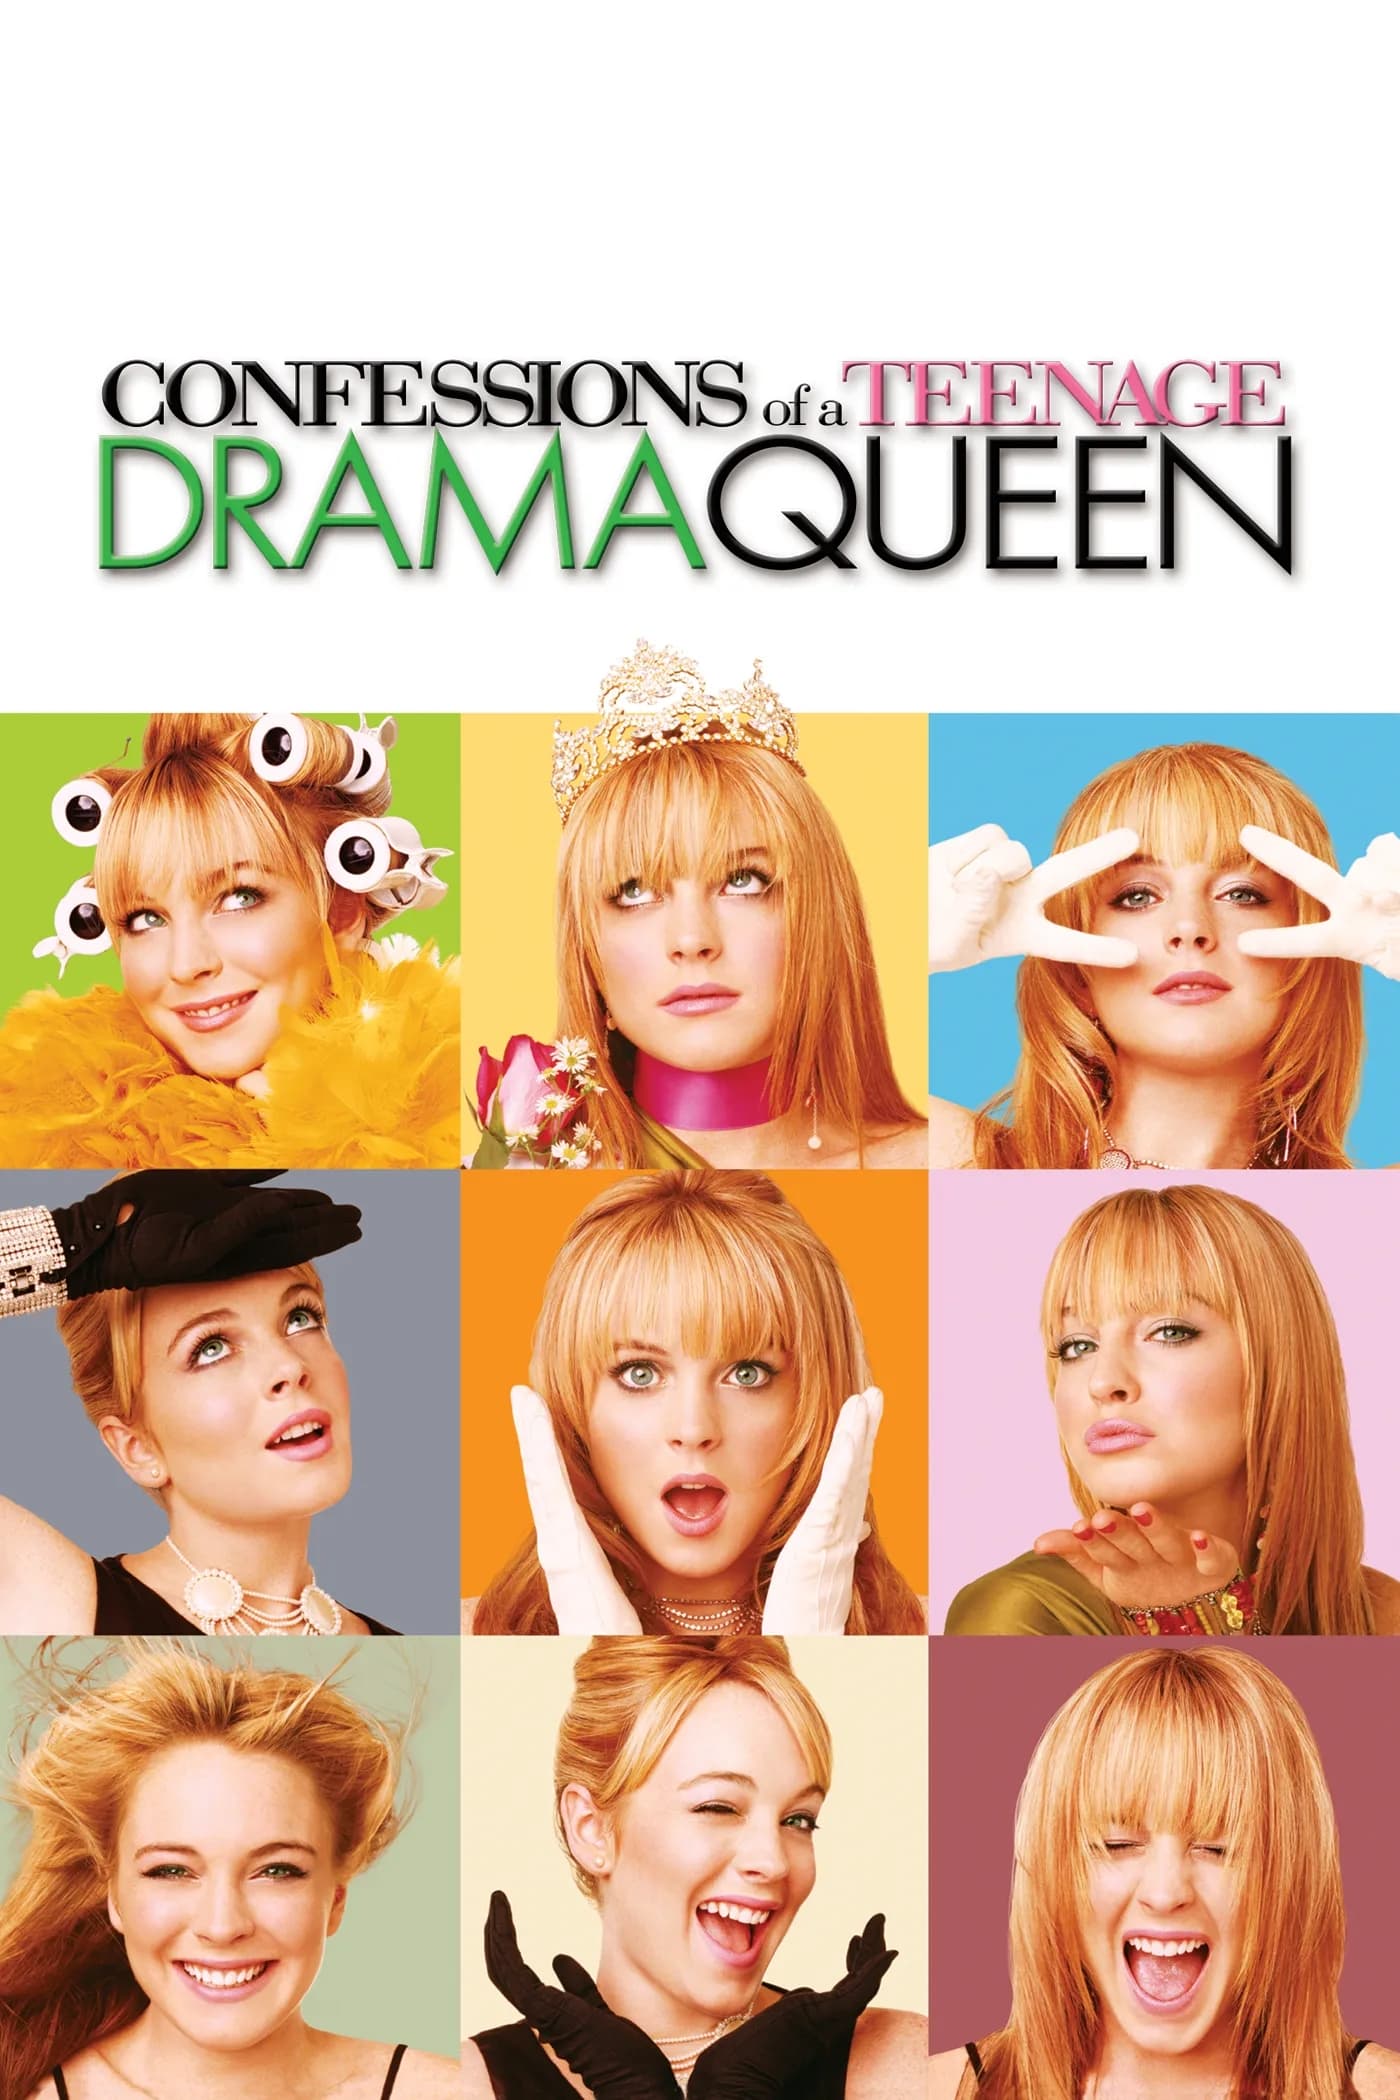 اعترافات ملکهٔ درام تین‌ایجری (Confessions of a Teenage Drama Queen)